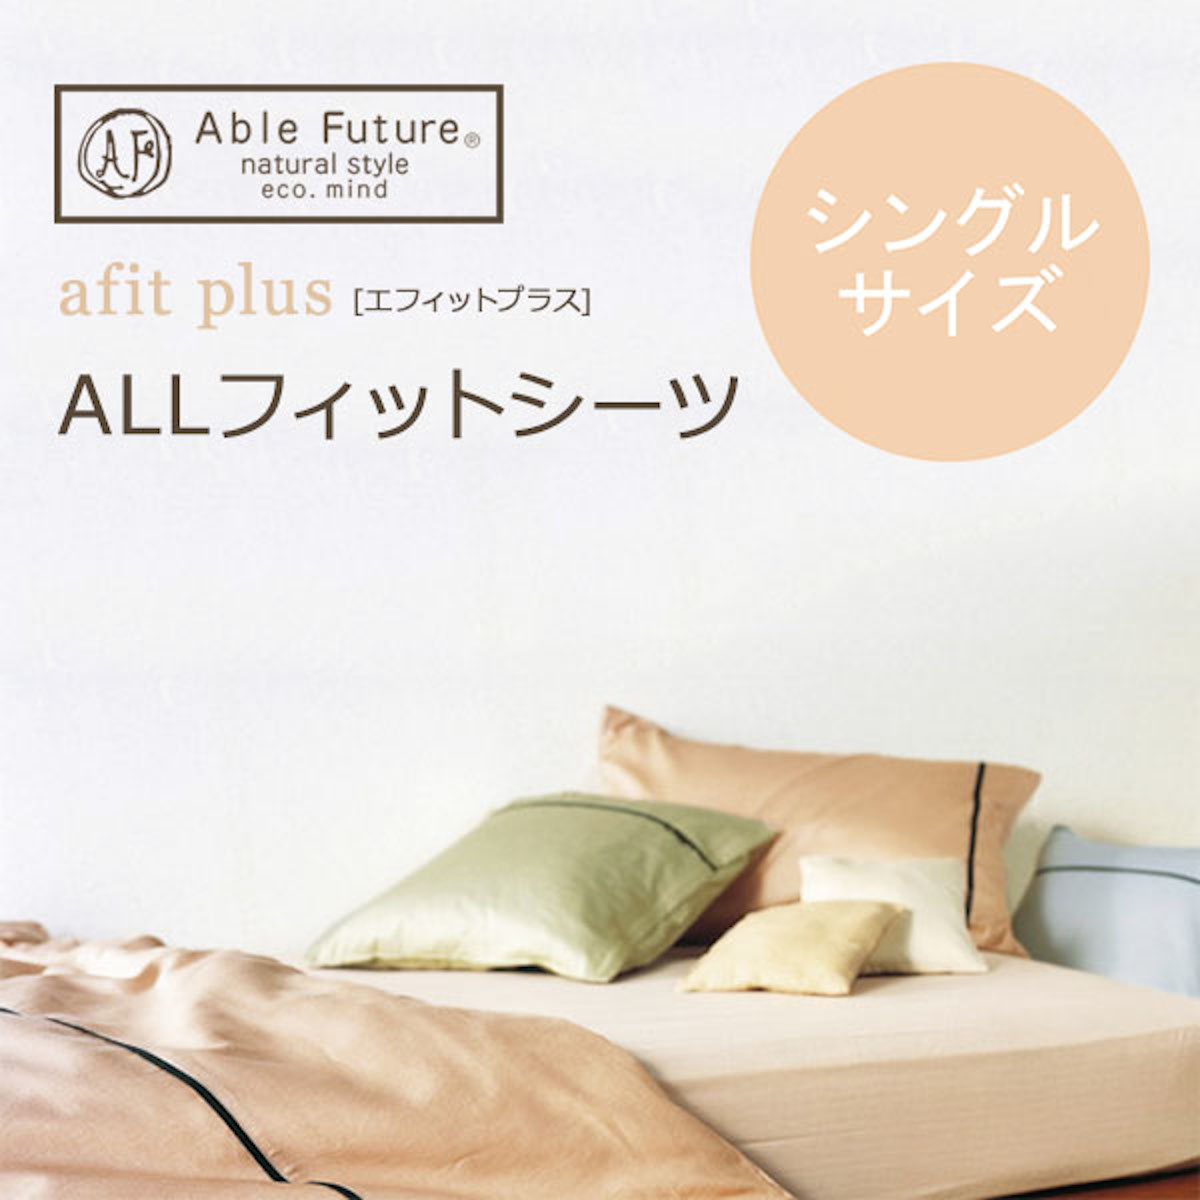 561-95>【Able Future】エフィットプラス ALLフィットシーツ シングル